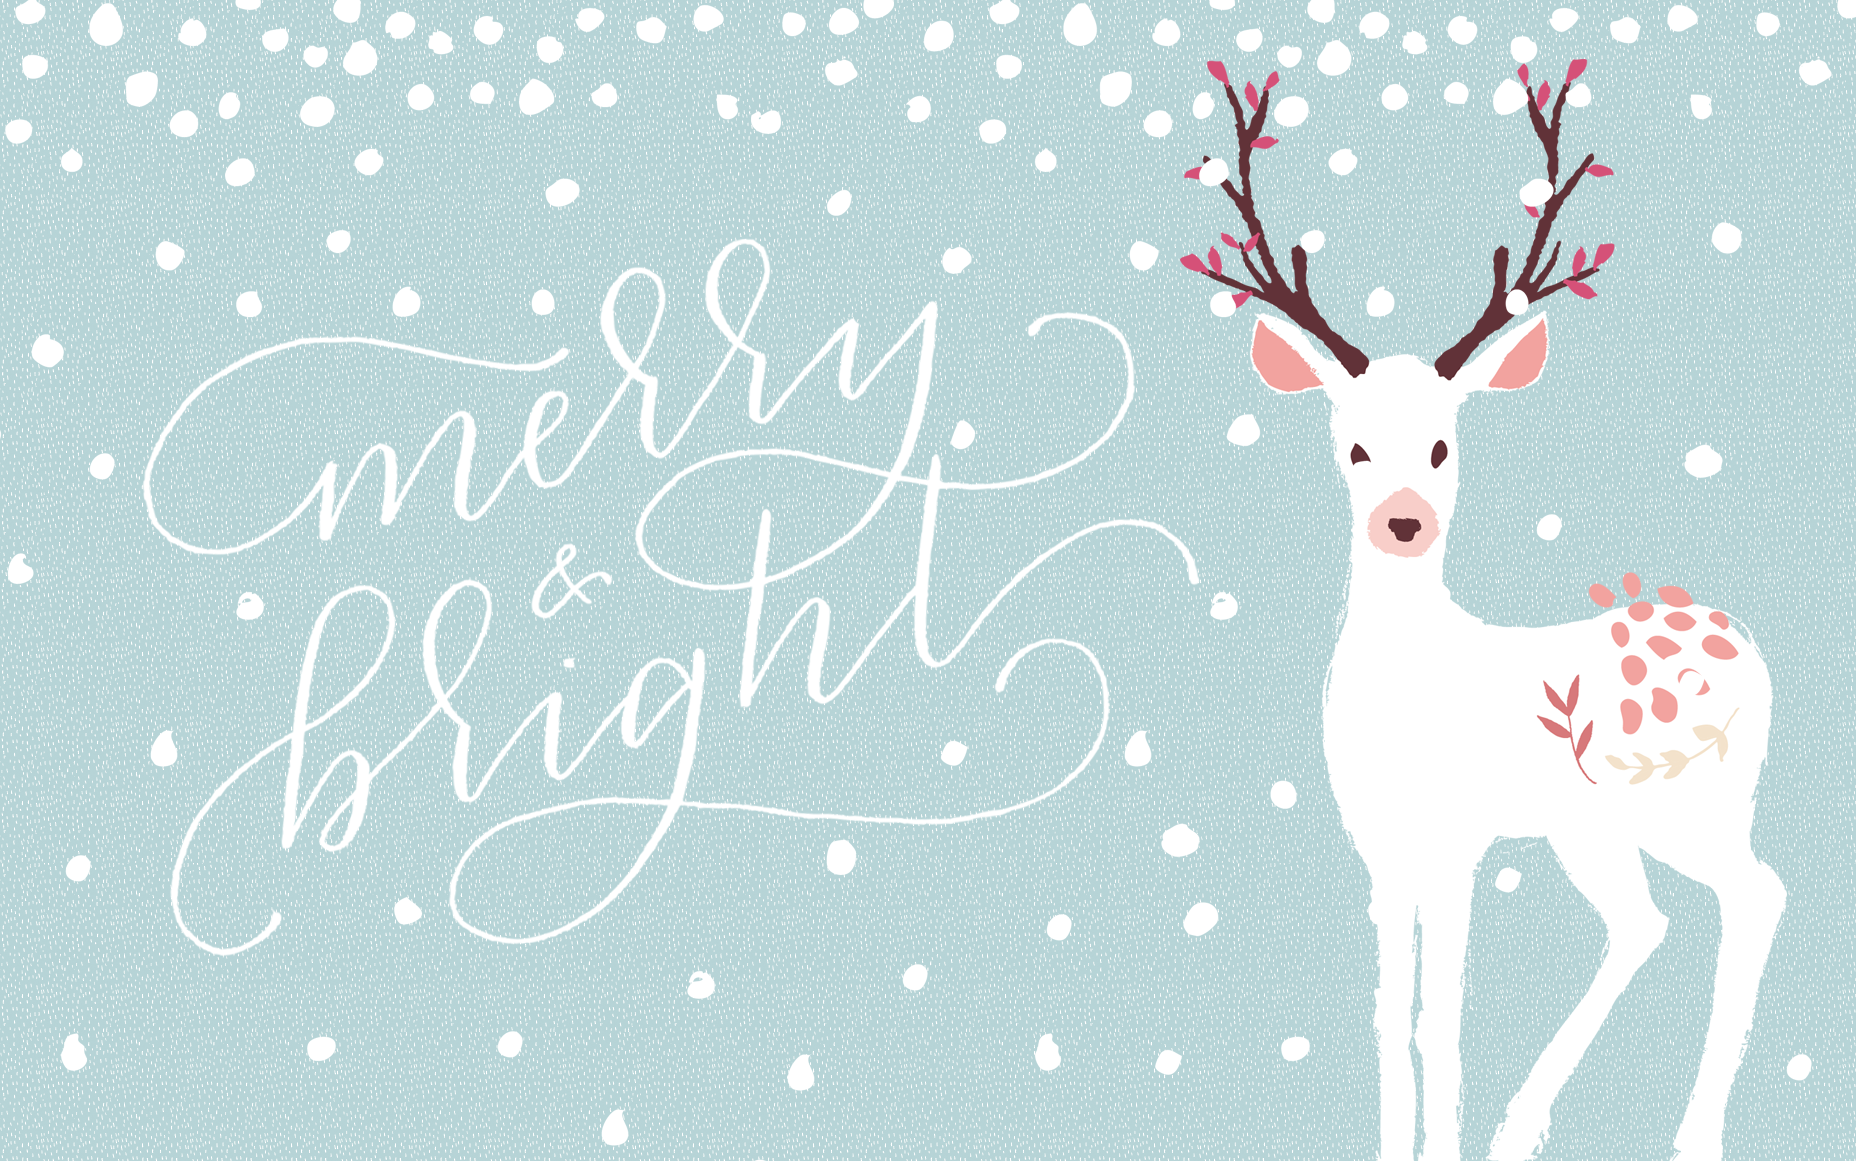 dicembre wallpaper hd,cervo,renna,font,modello,design